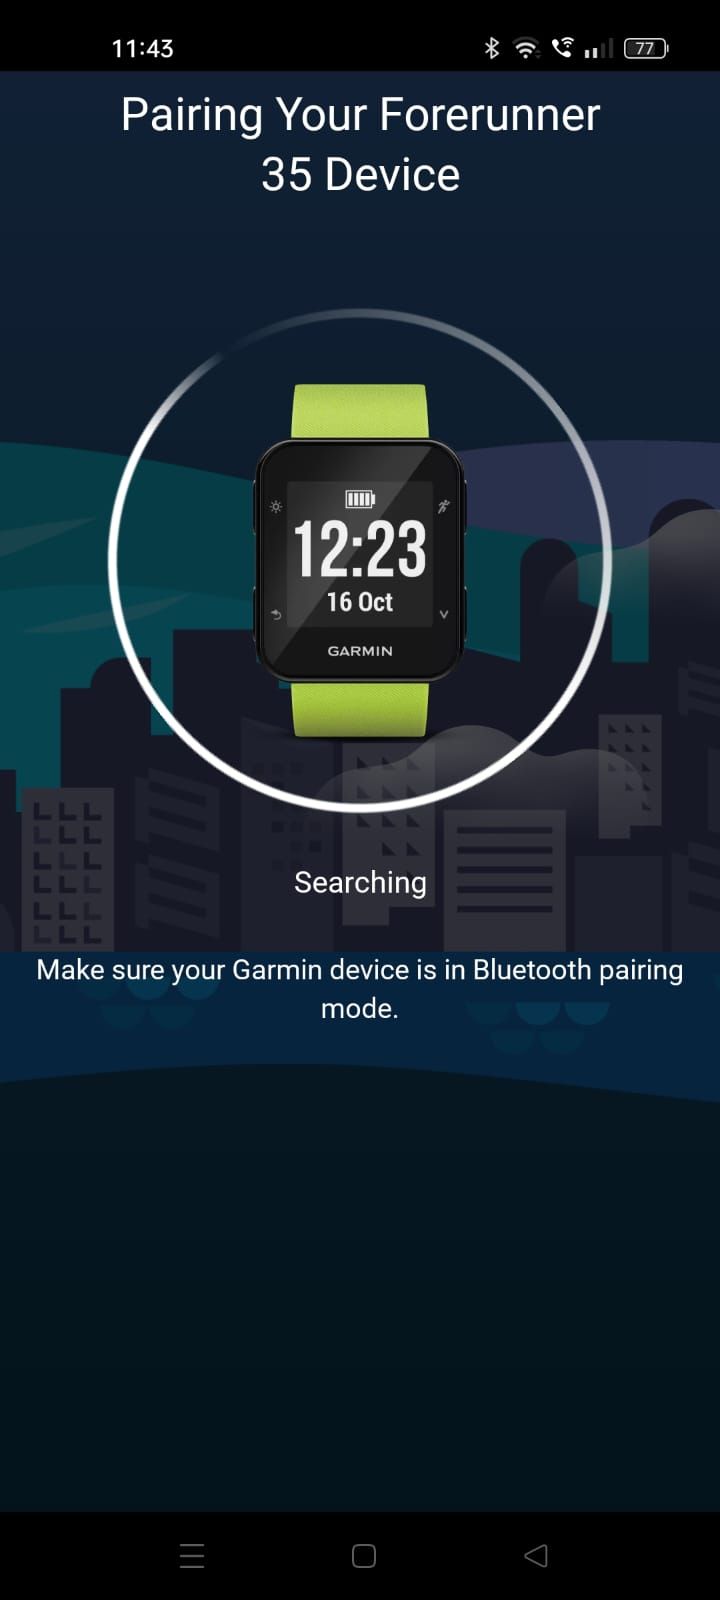 Captura de tela mostrando a tela de emparelhamento no aplicativo Garmin Connect